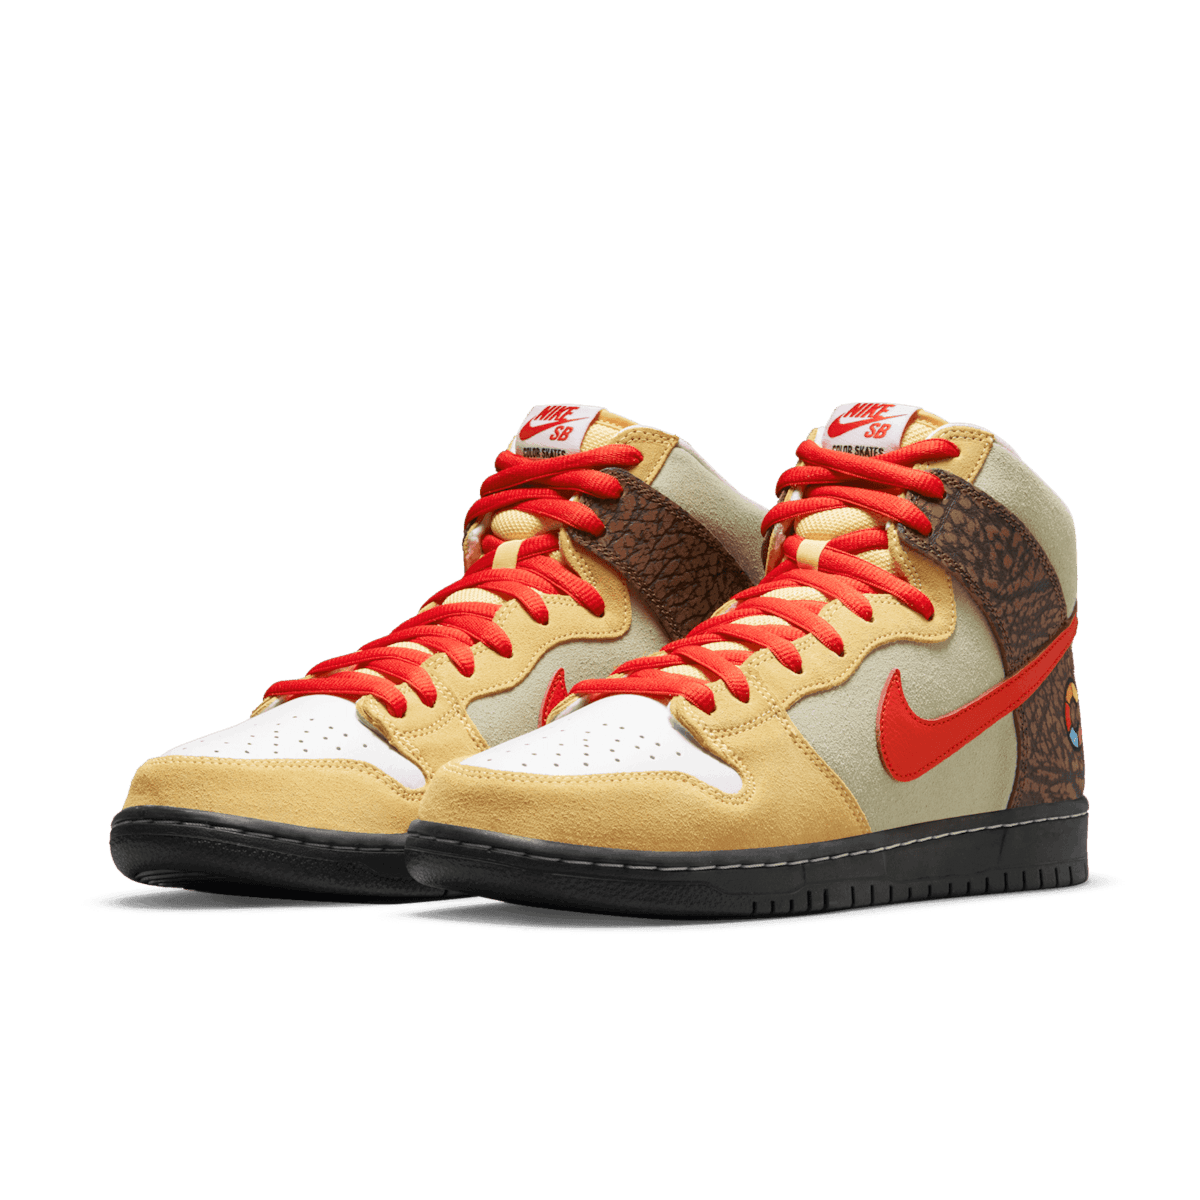 Nike Color Skates SB Dunk High Kebab And Destroy Angle 2